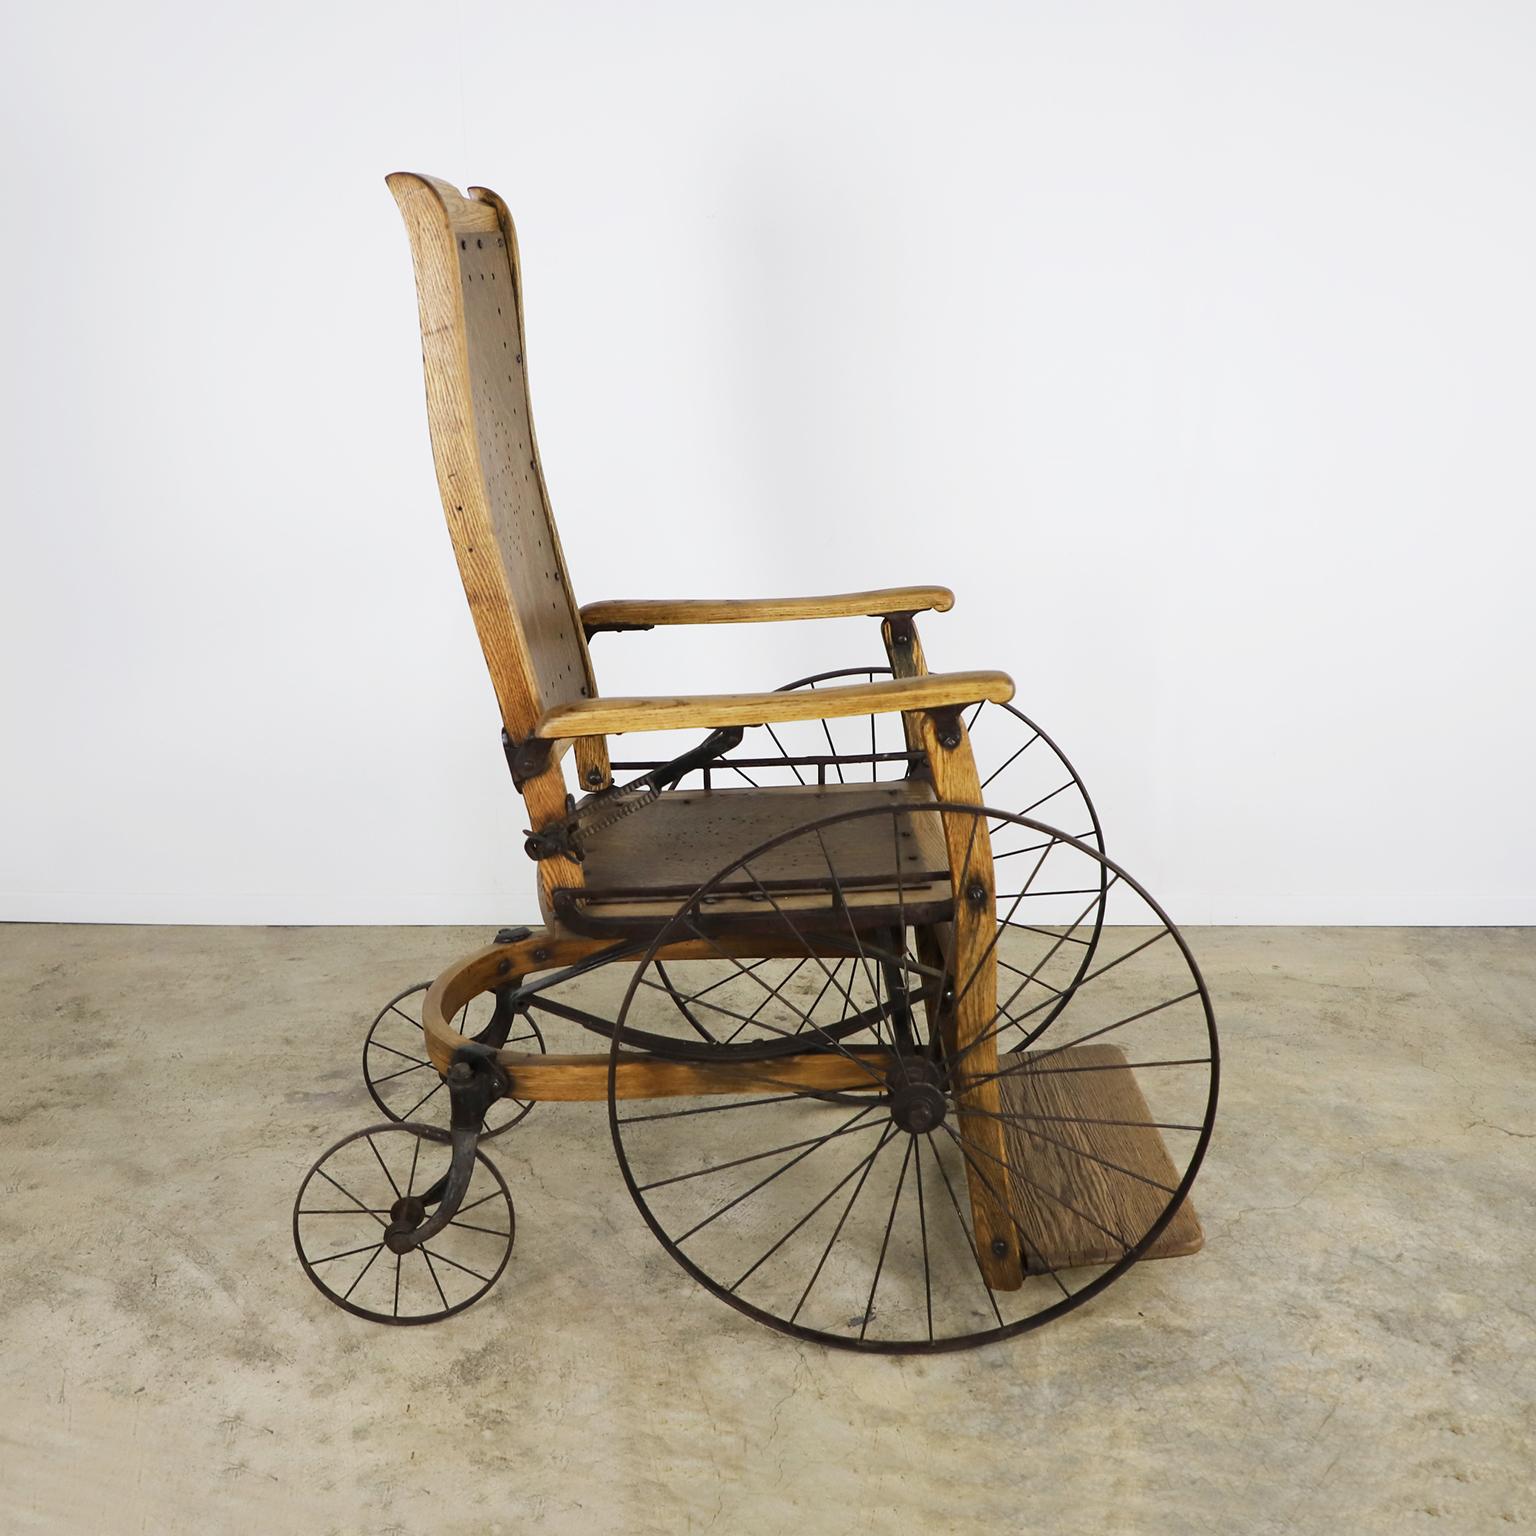 Circa 1900. Nous proposons ce rare Fauteuil roulant en bois. Fabriqué en bois et en fer, le fauteuil roulant présente une finition impeccable qui évoque le cœur de l'héritage industriel américain.